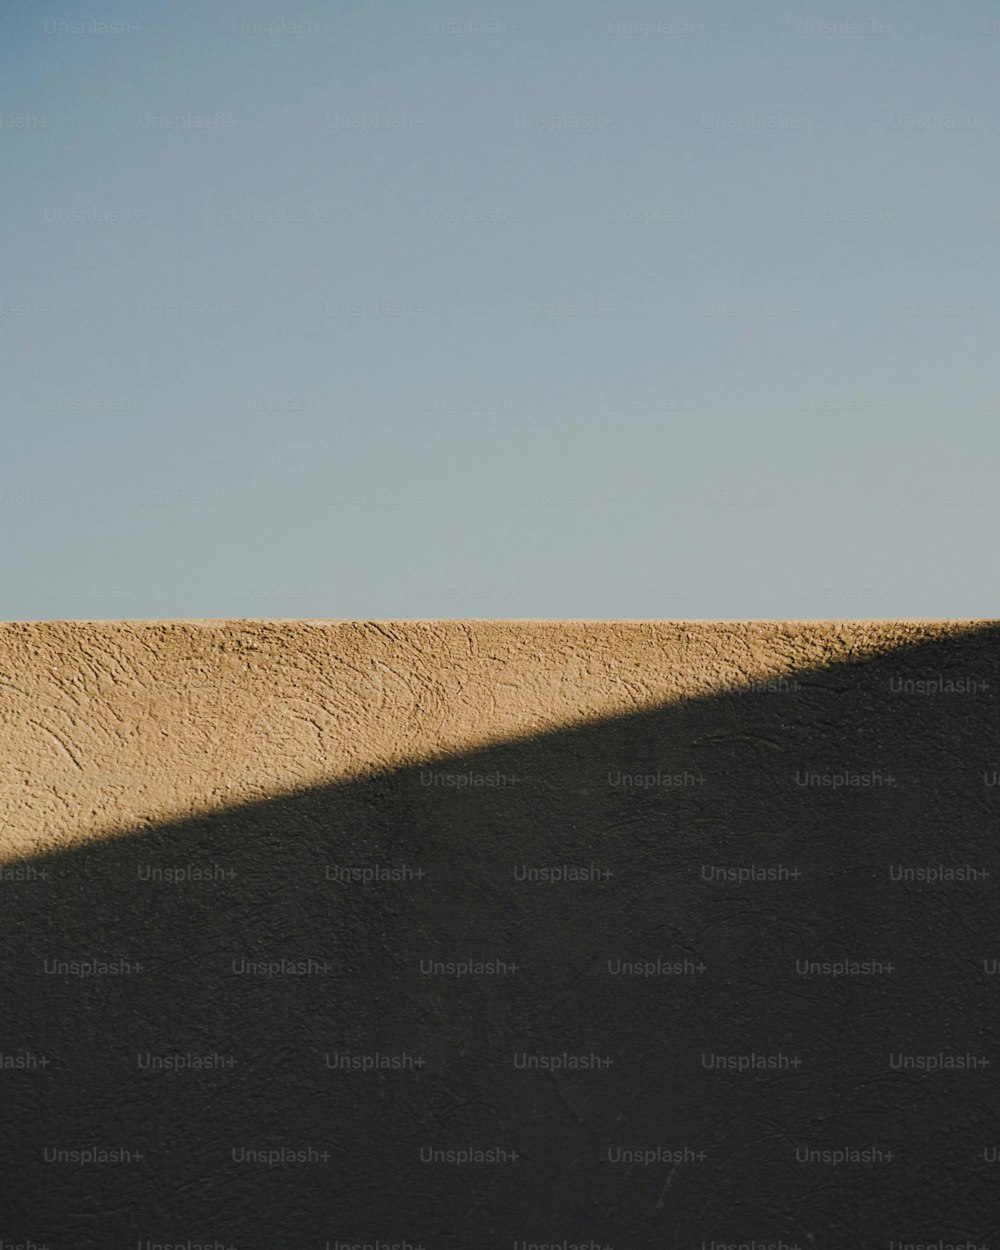 Un homme sur une planche à roulettes au sommet d’un mur de ciment